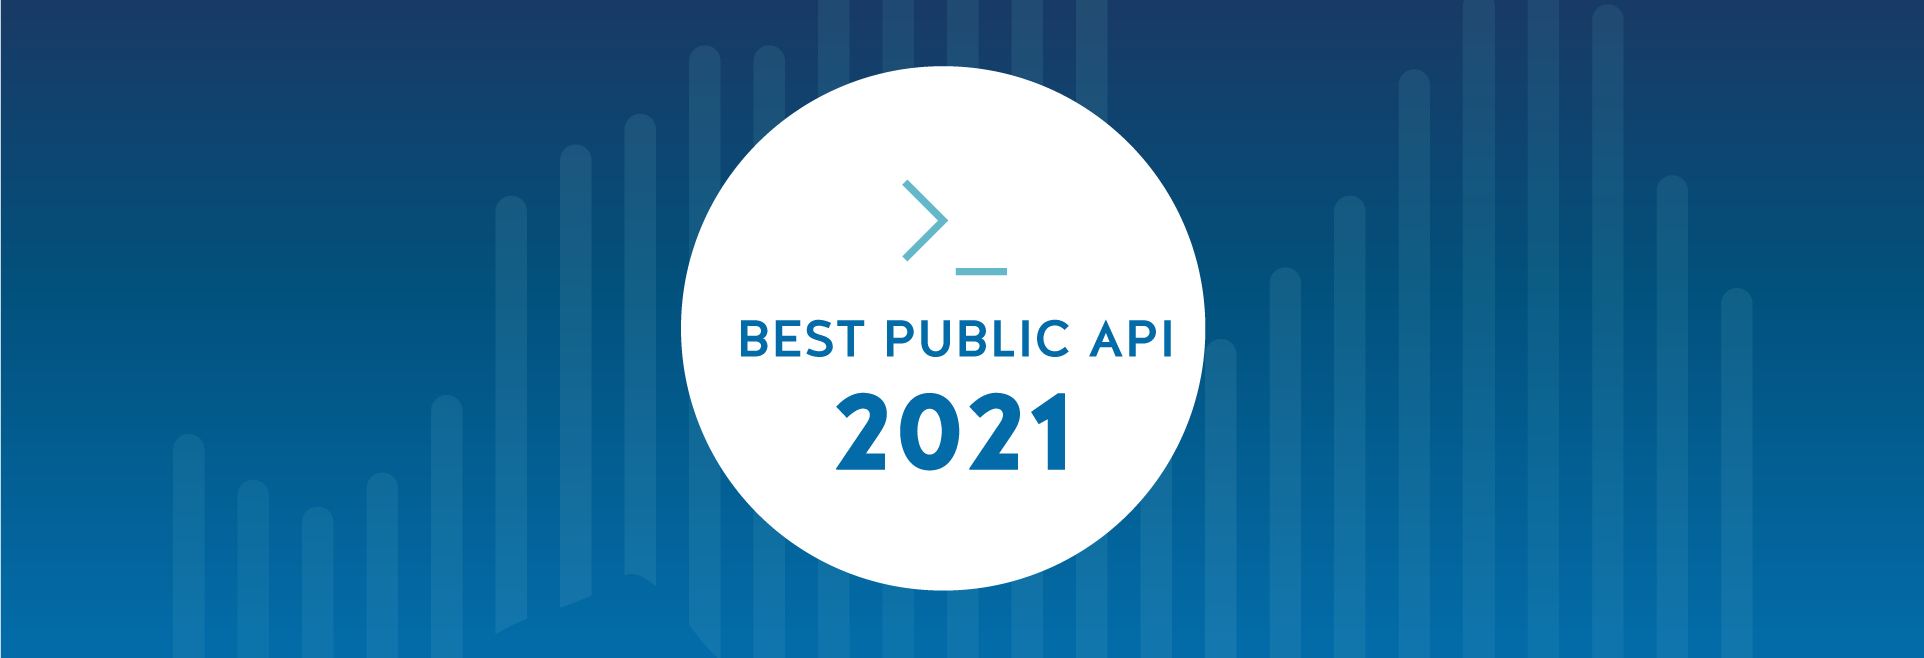 Best Public API 2021